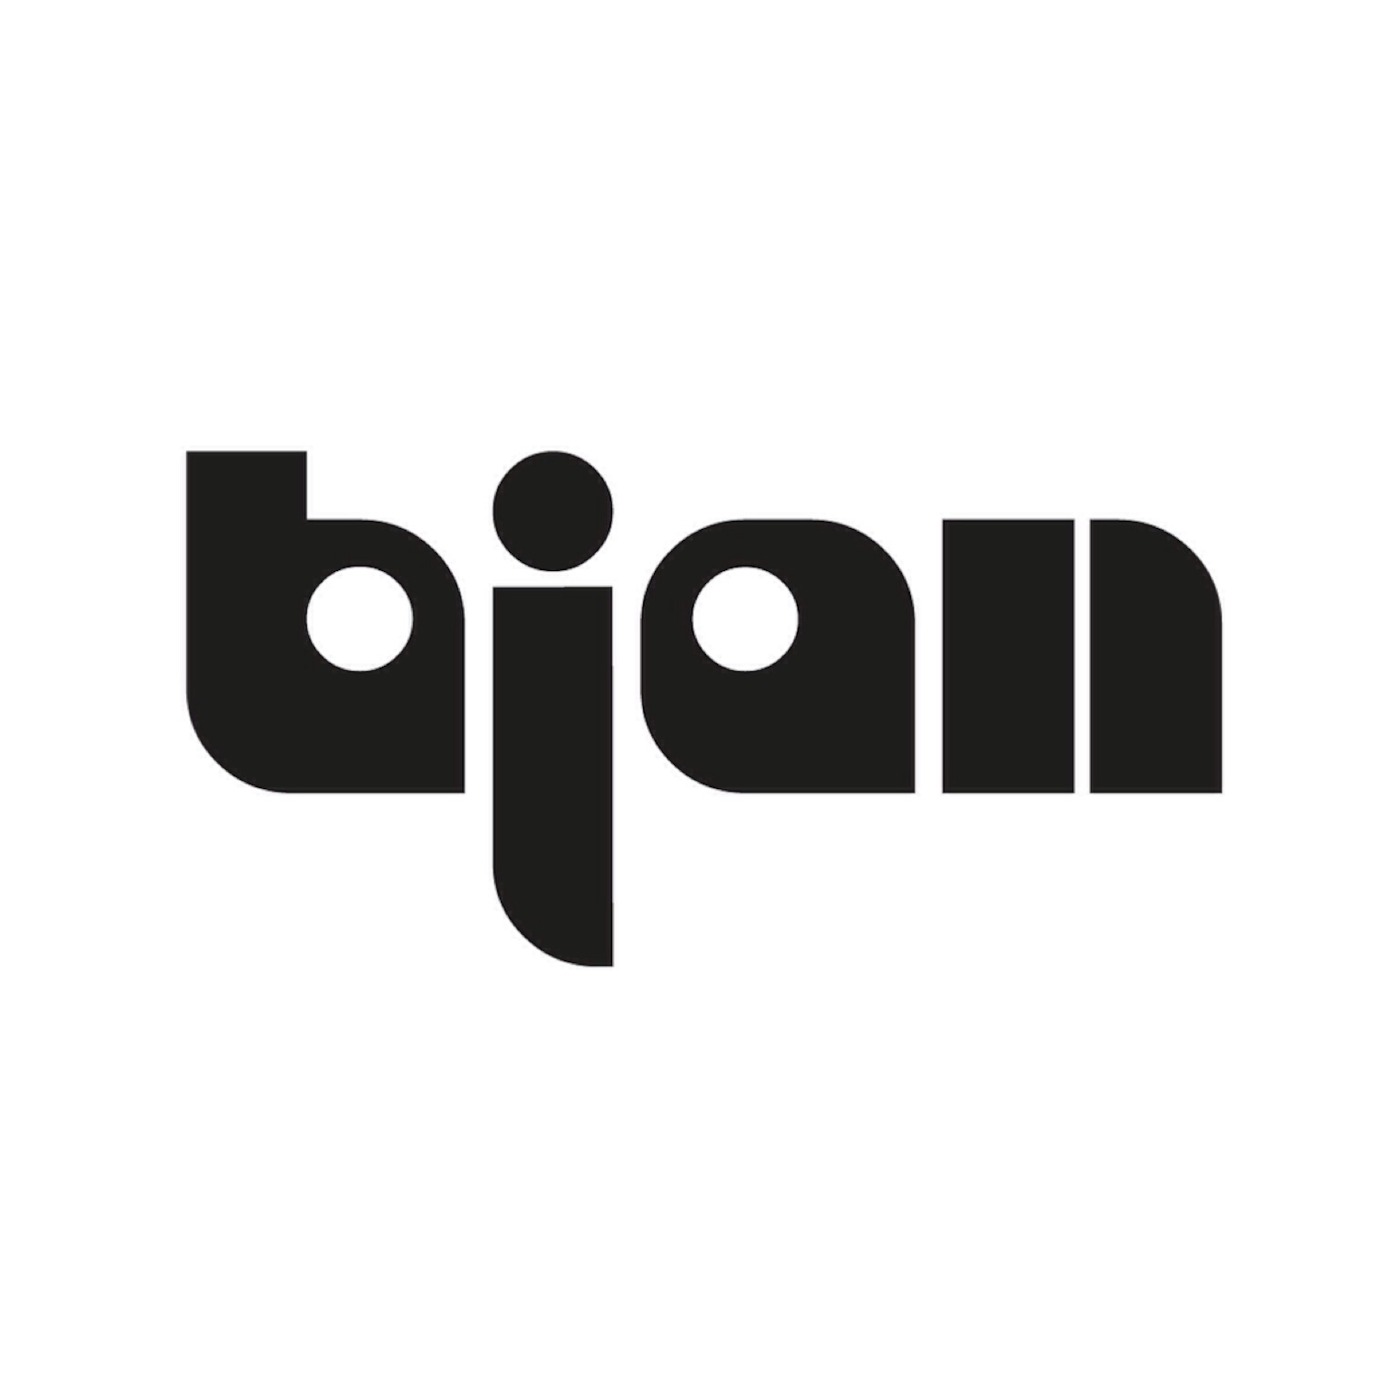 Bjan RDJ's Podcast